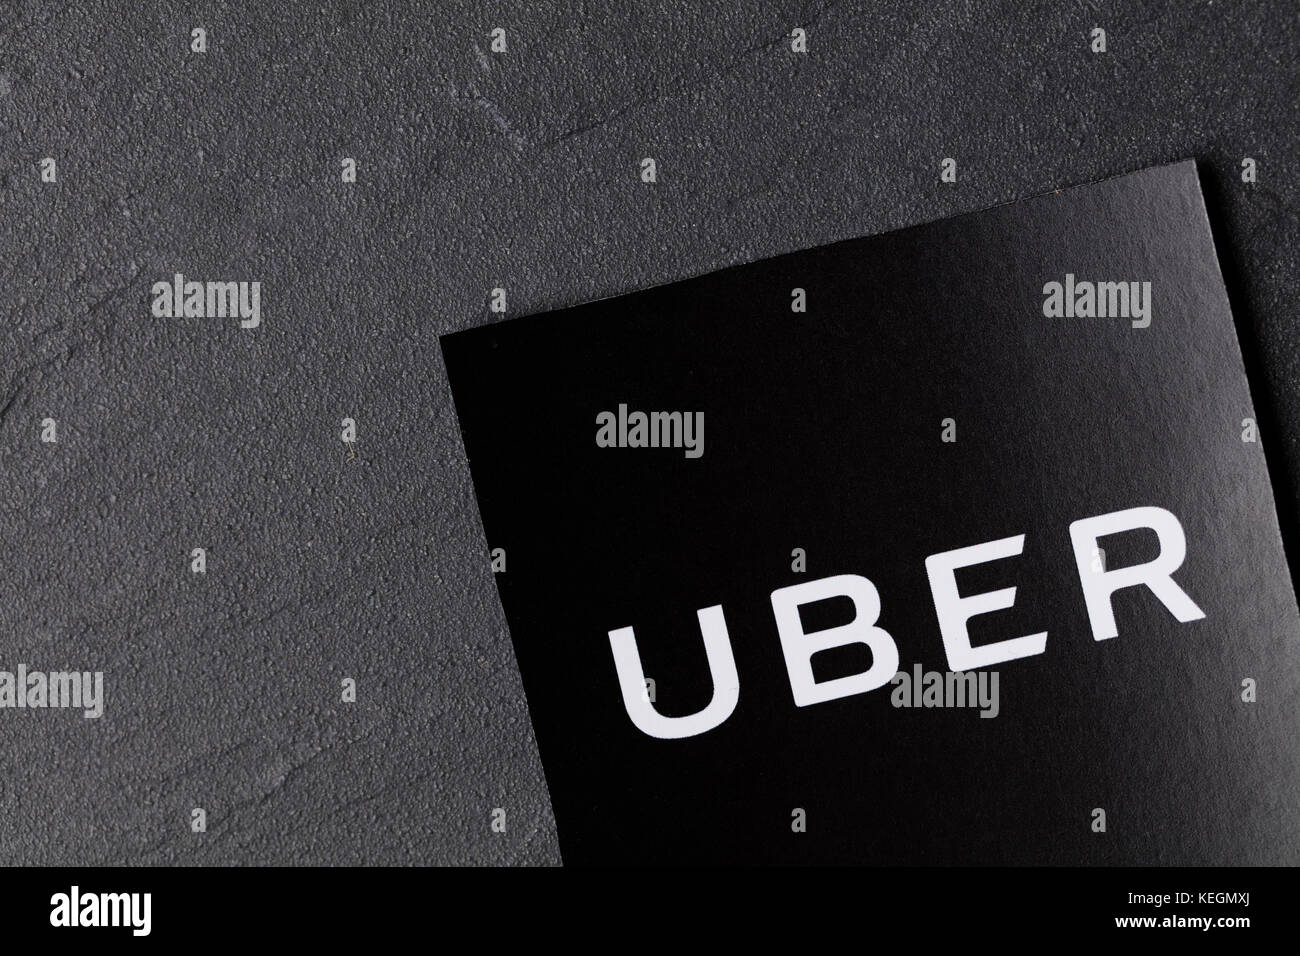 Ein Foto des uber Logo. Uber ist ein beliebter Stil taxi transport Service Anwendung, im Jahr 2009 gegründet. Stockfoto